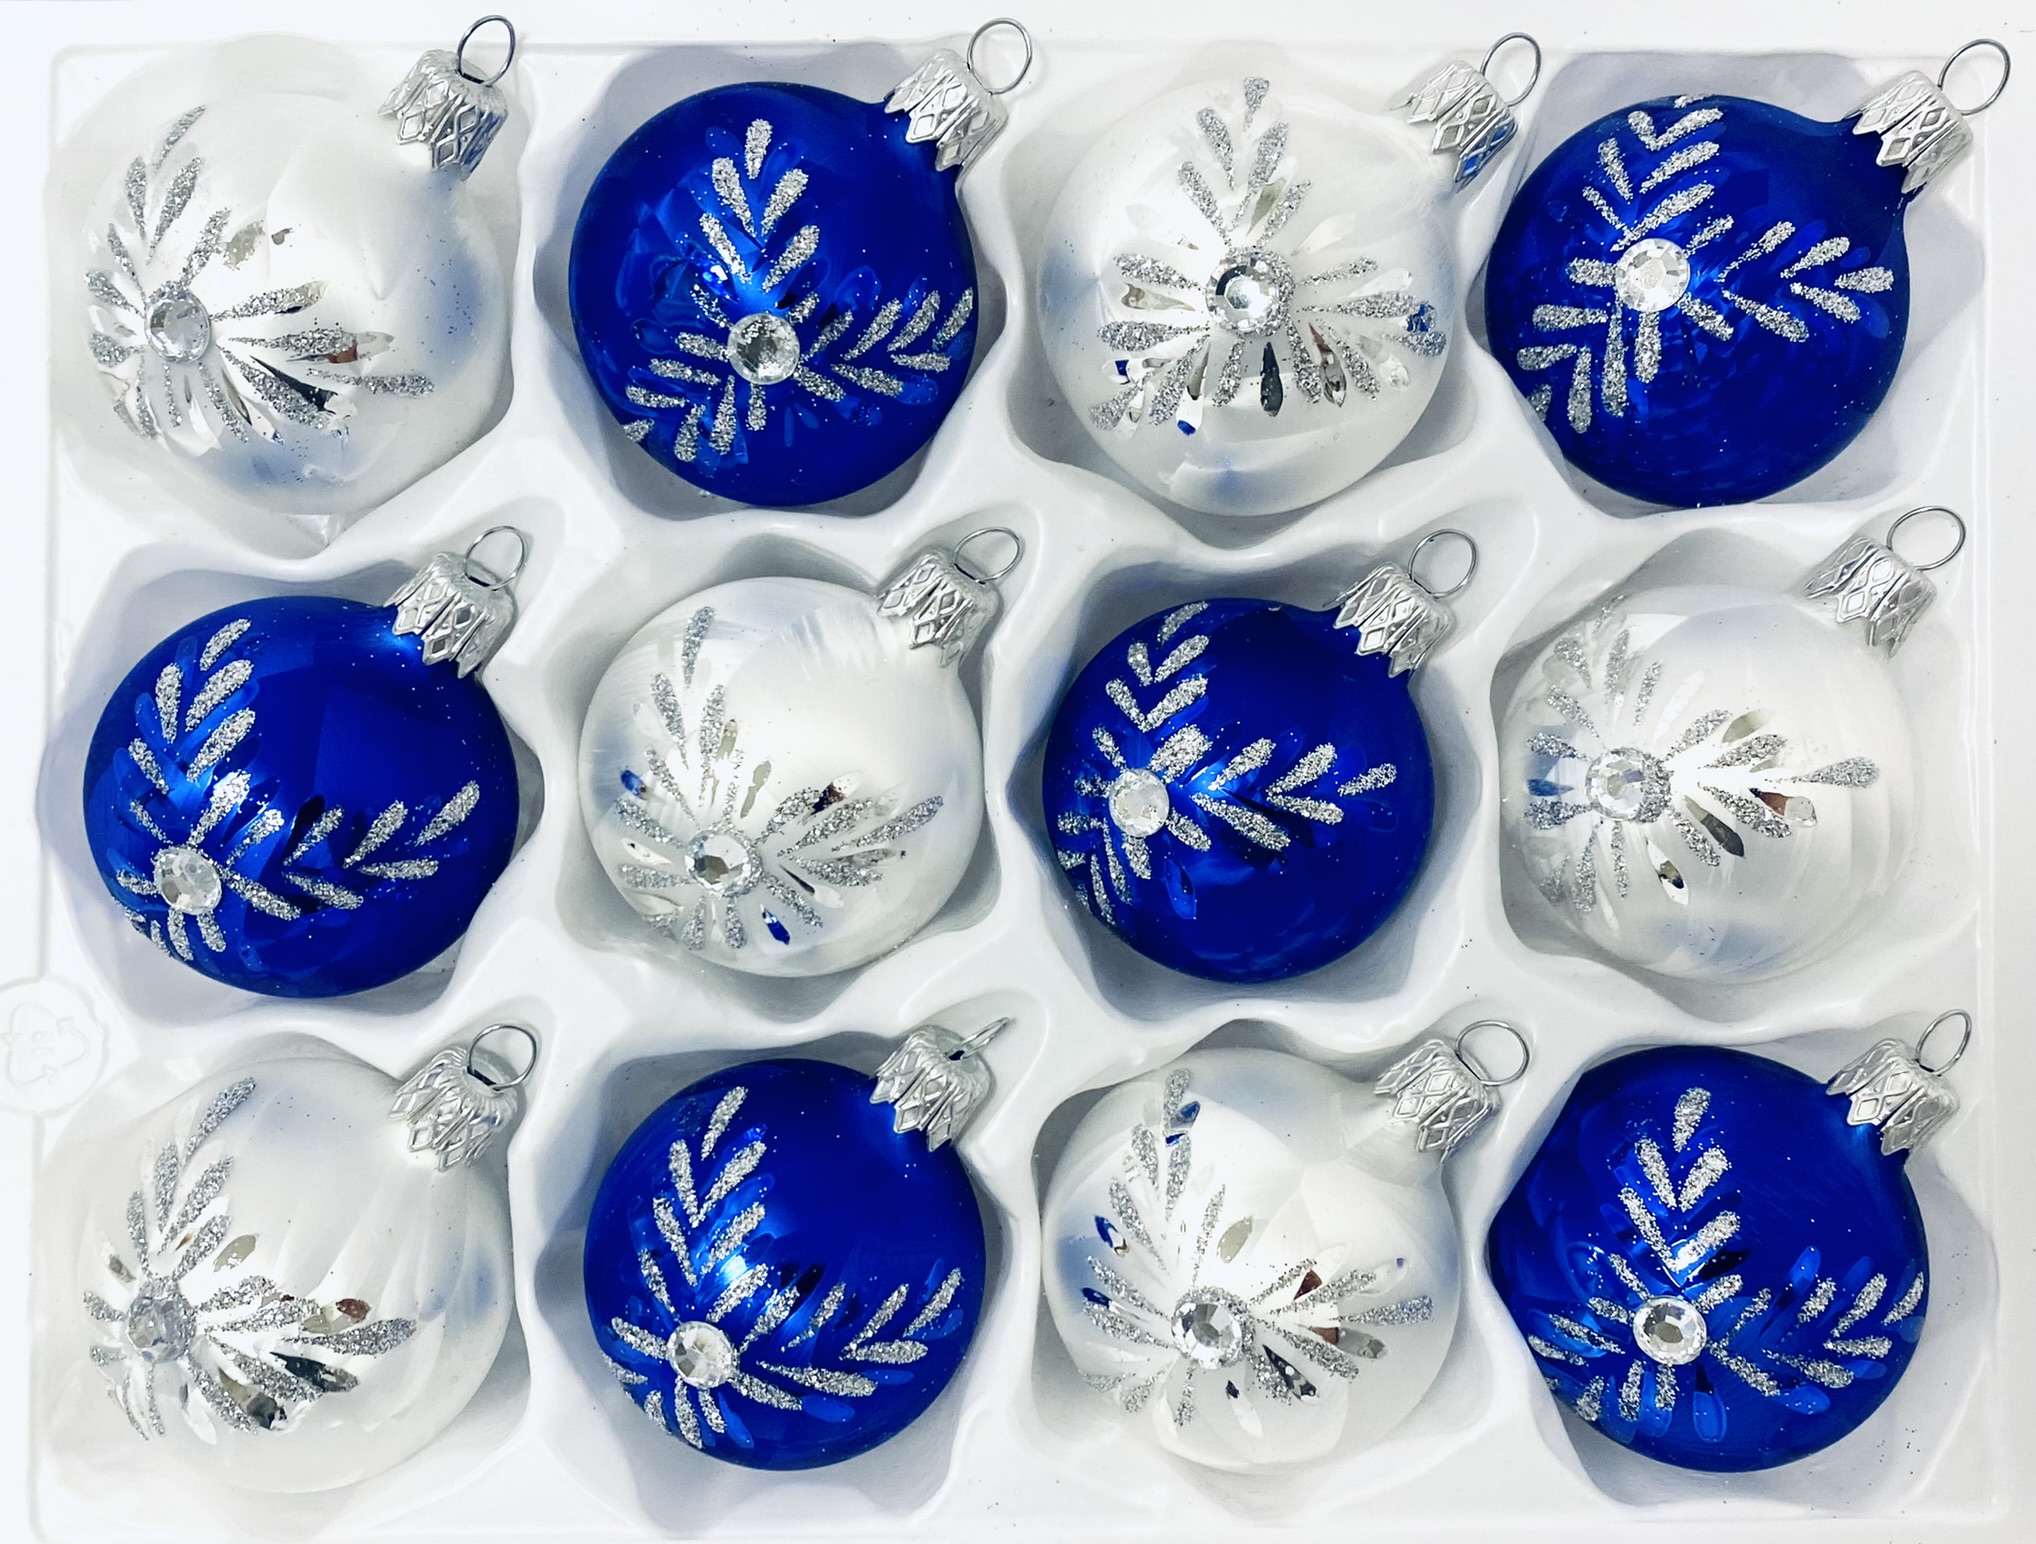 Irisa Vánoční ozdoby LUISA kombinace bílé a modré koule s dekorem mrazolak 6 cm, SET 12 ks Balení: 12ks, Barva: modrá;bílá, Velikost: 6 cm